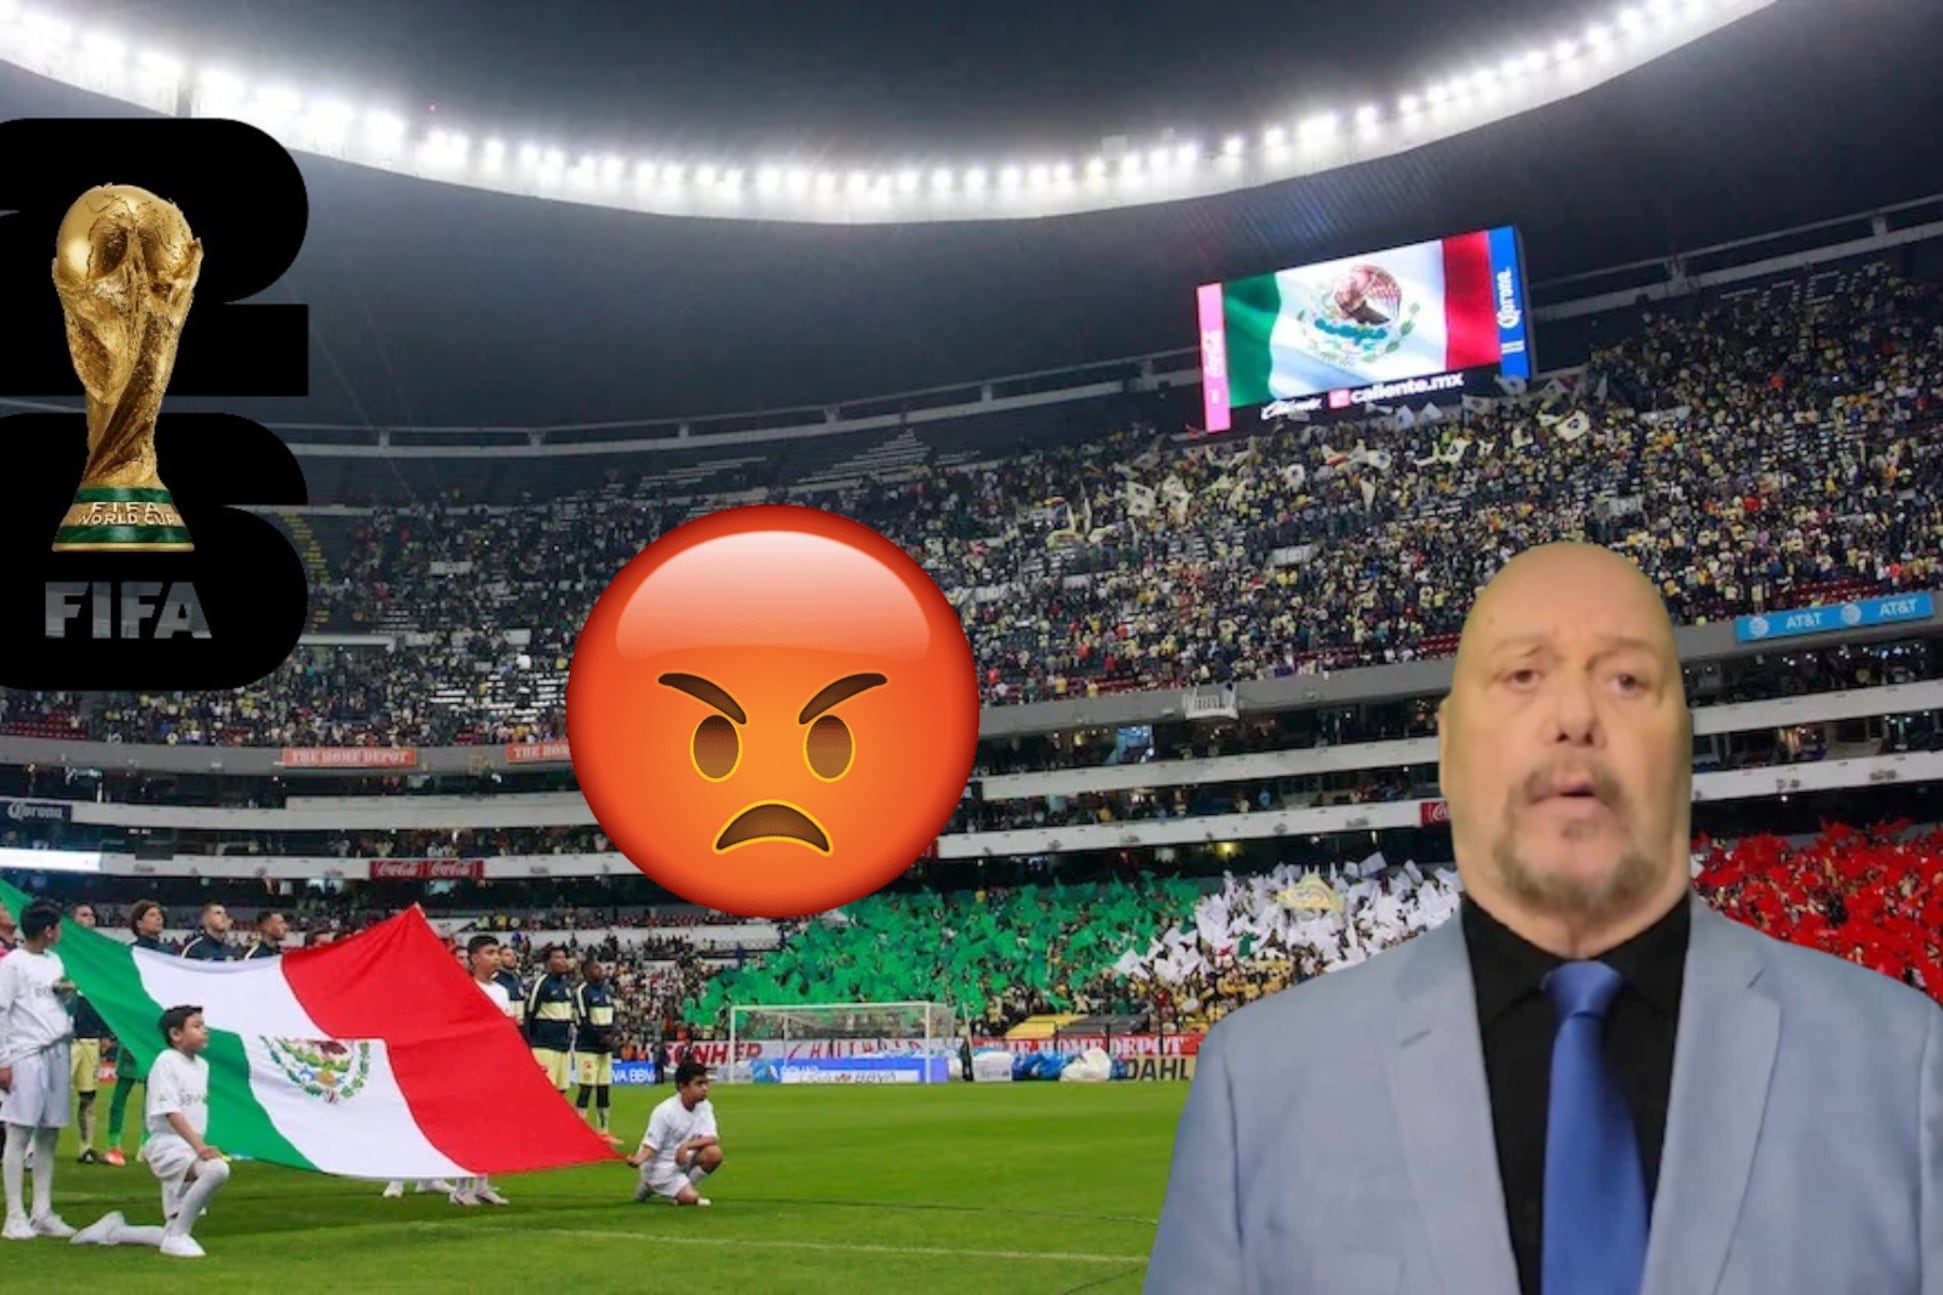 (VIDEO) México merecía más partidos del Mundial 2026 por su tradición futbolera